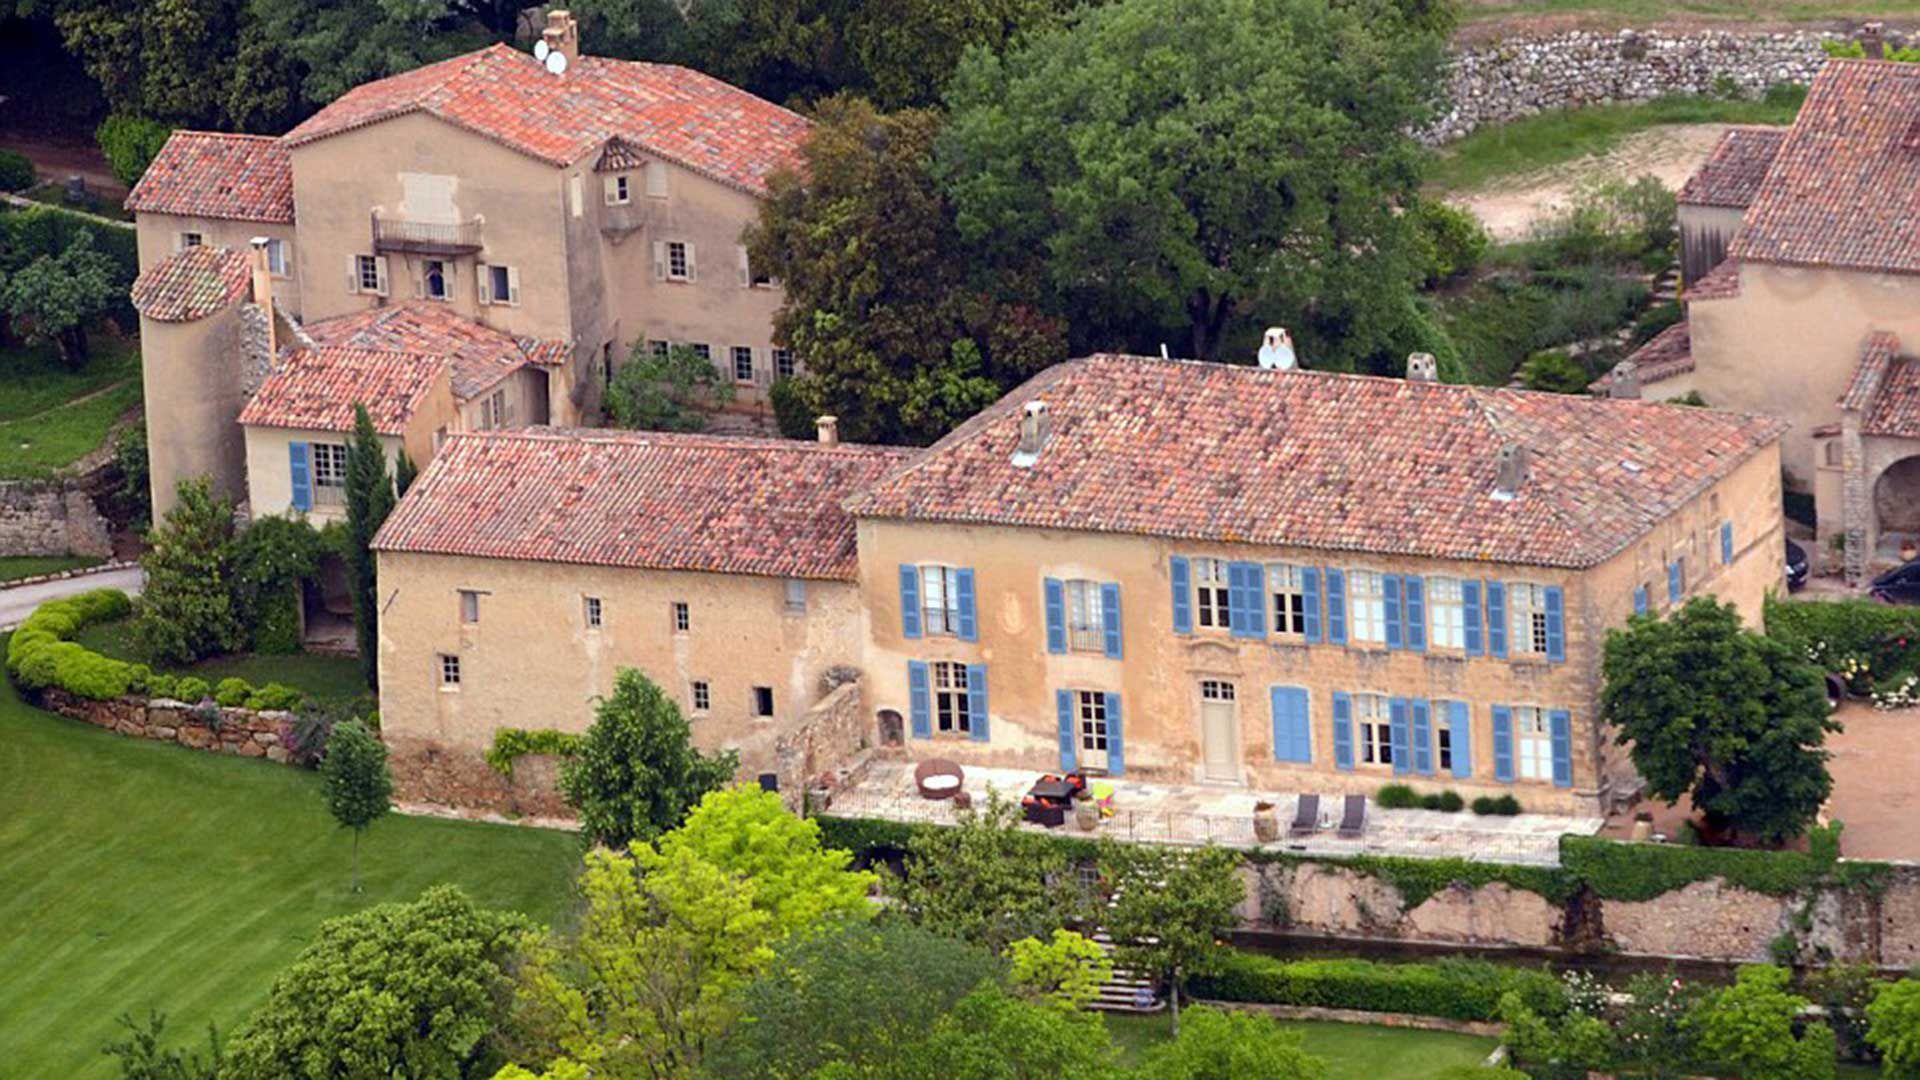 Chateau Miraval está ubicada en la Provenza francesa en un pueblo de Correns, justo al norte de Brignoles, un pueblo en el departamento de Var en el sur de Francia 